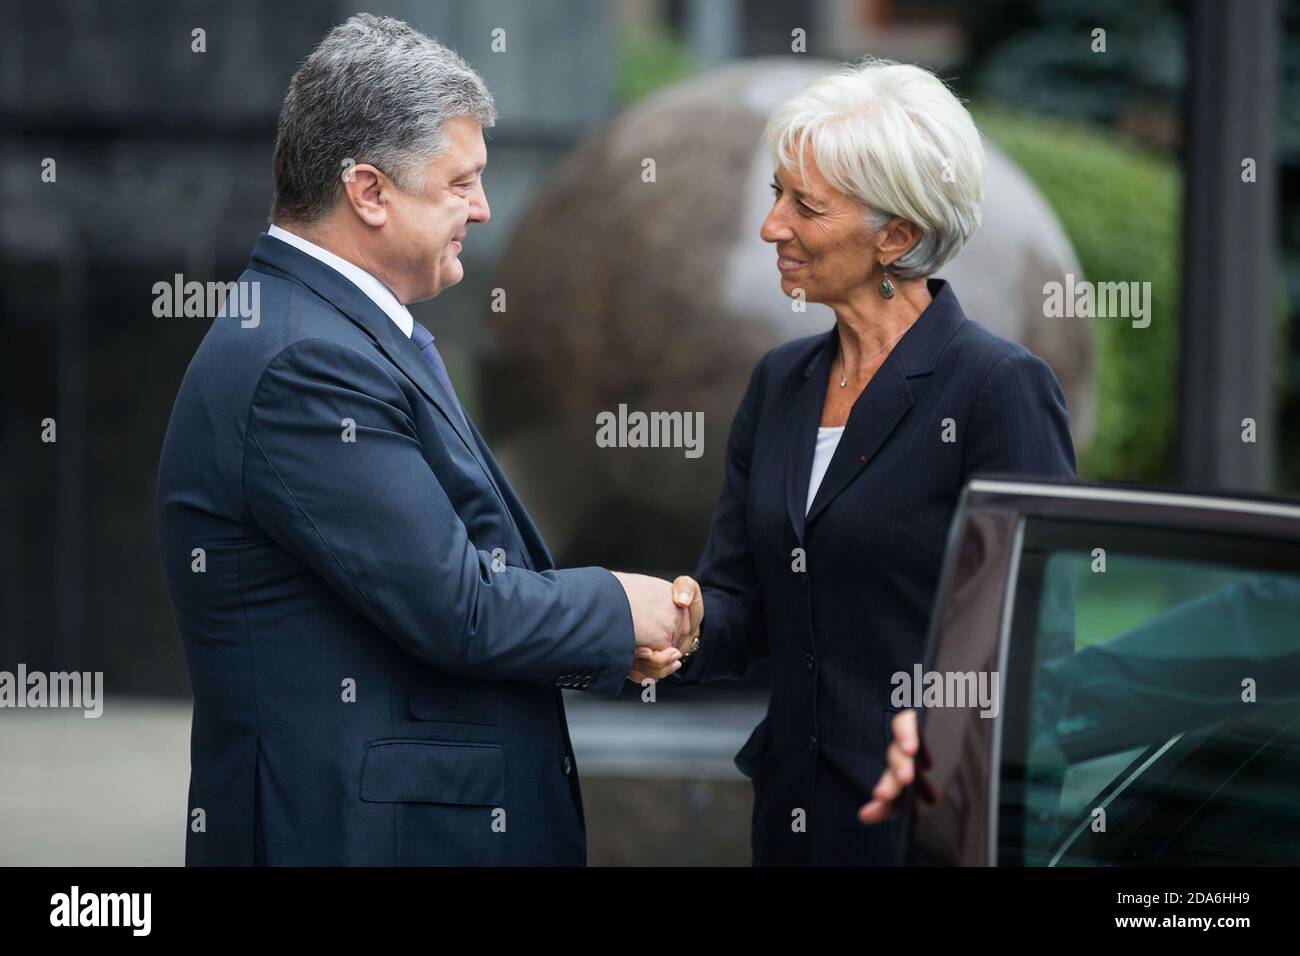 KIEW, UKRAINE - 06. Sep 2015: Präsident der Ukraine Petro Poroschenko und Geschäftsführerin des Internationalen Währungsfonds, Christine Lagarde, während eines Treffens in Kiew Stockfoto